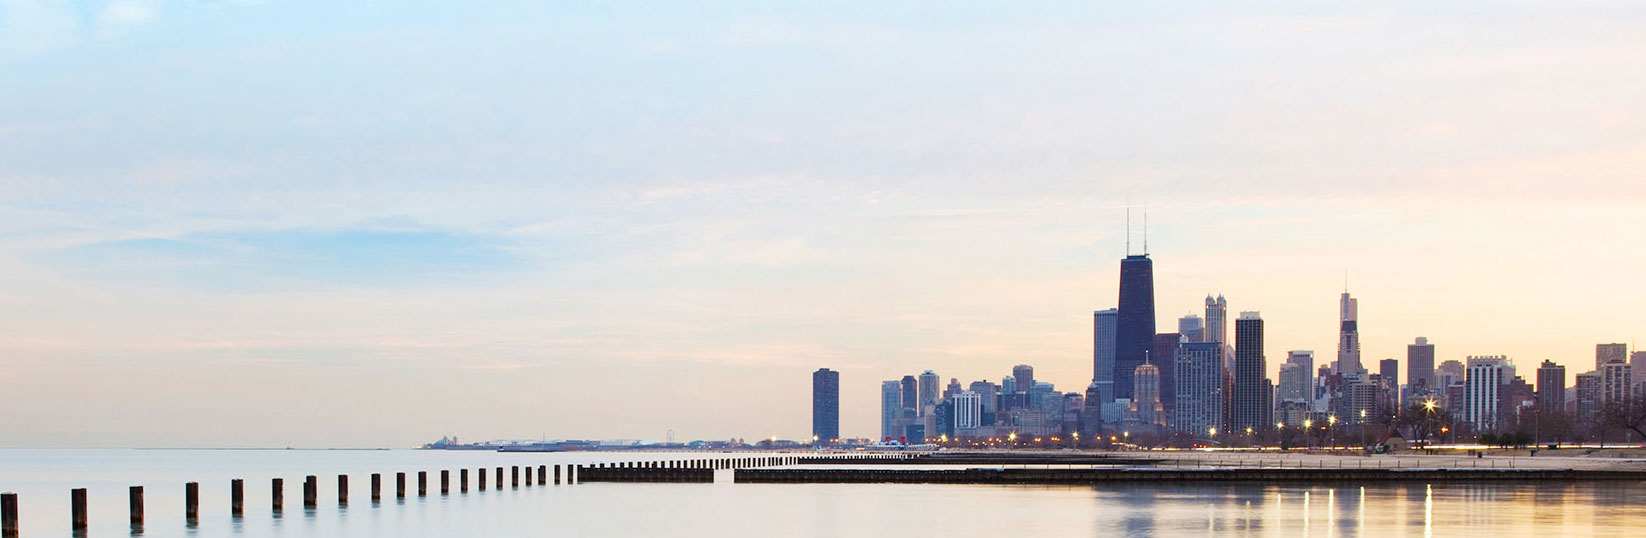 Vue de l’horizon de Chicago depuis l’eau, avec des rangées de gratte-ciel en vue